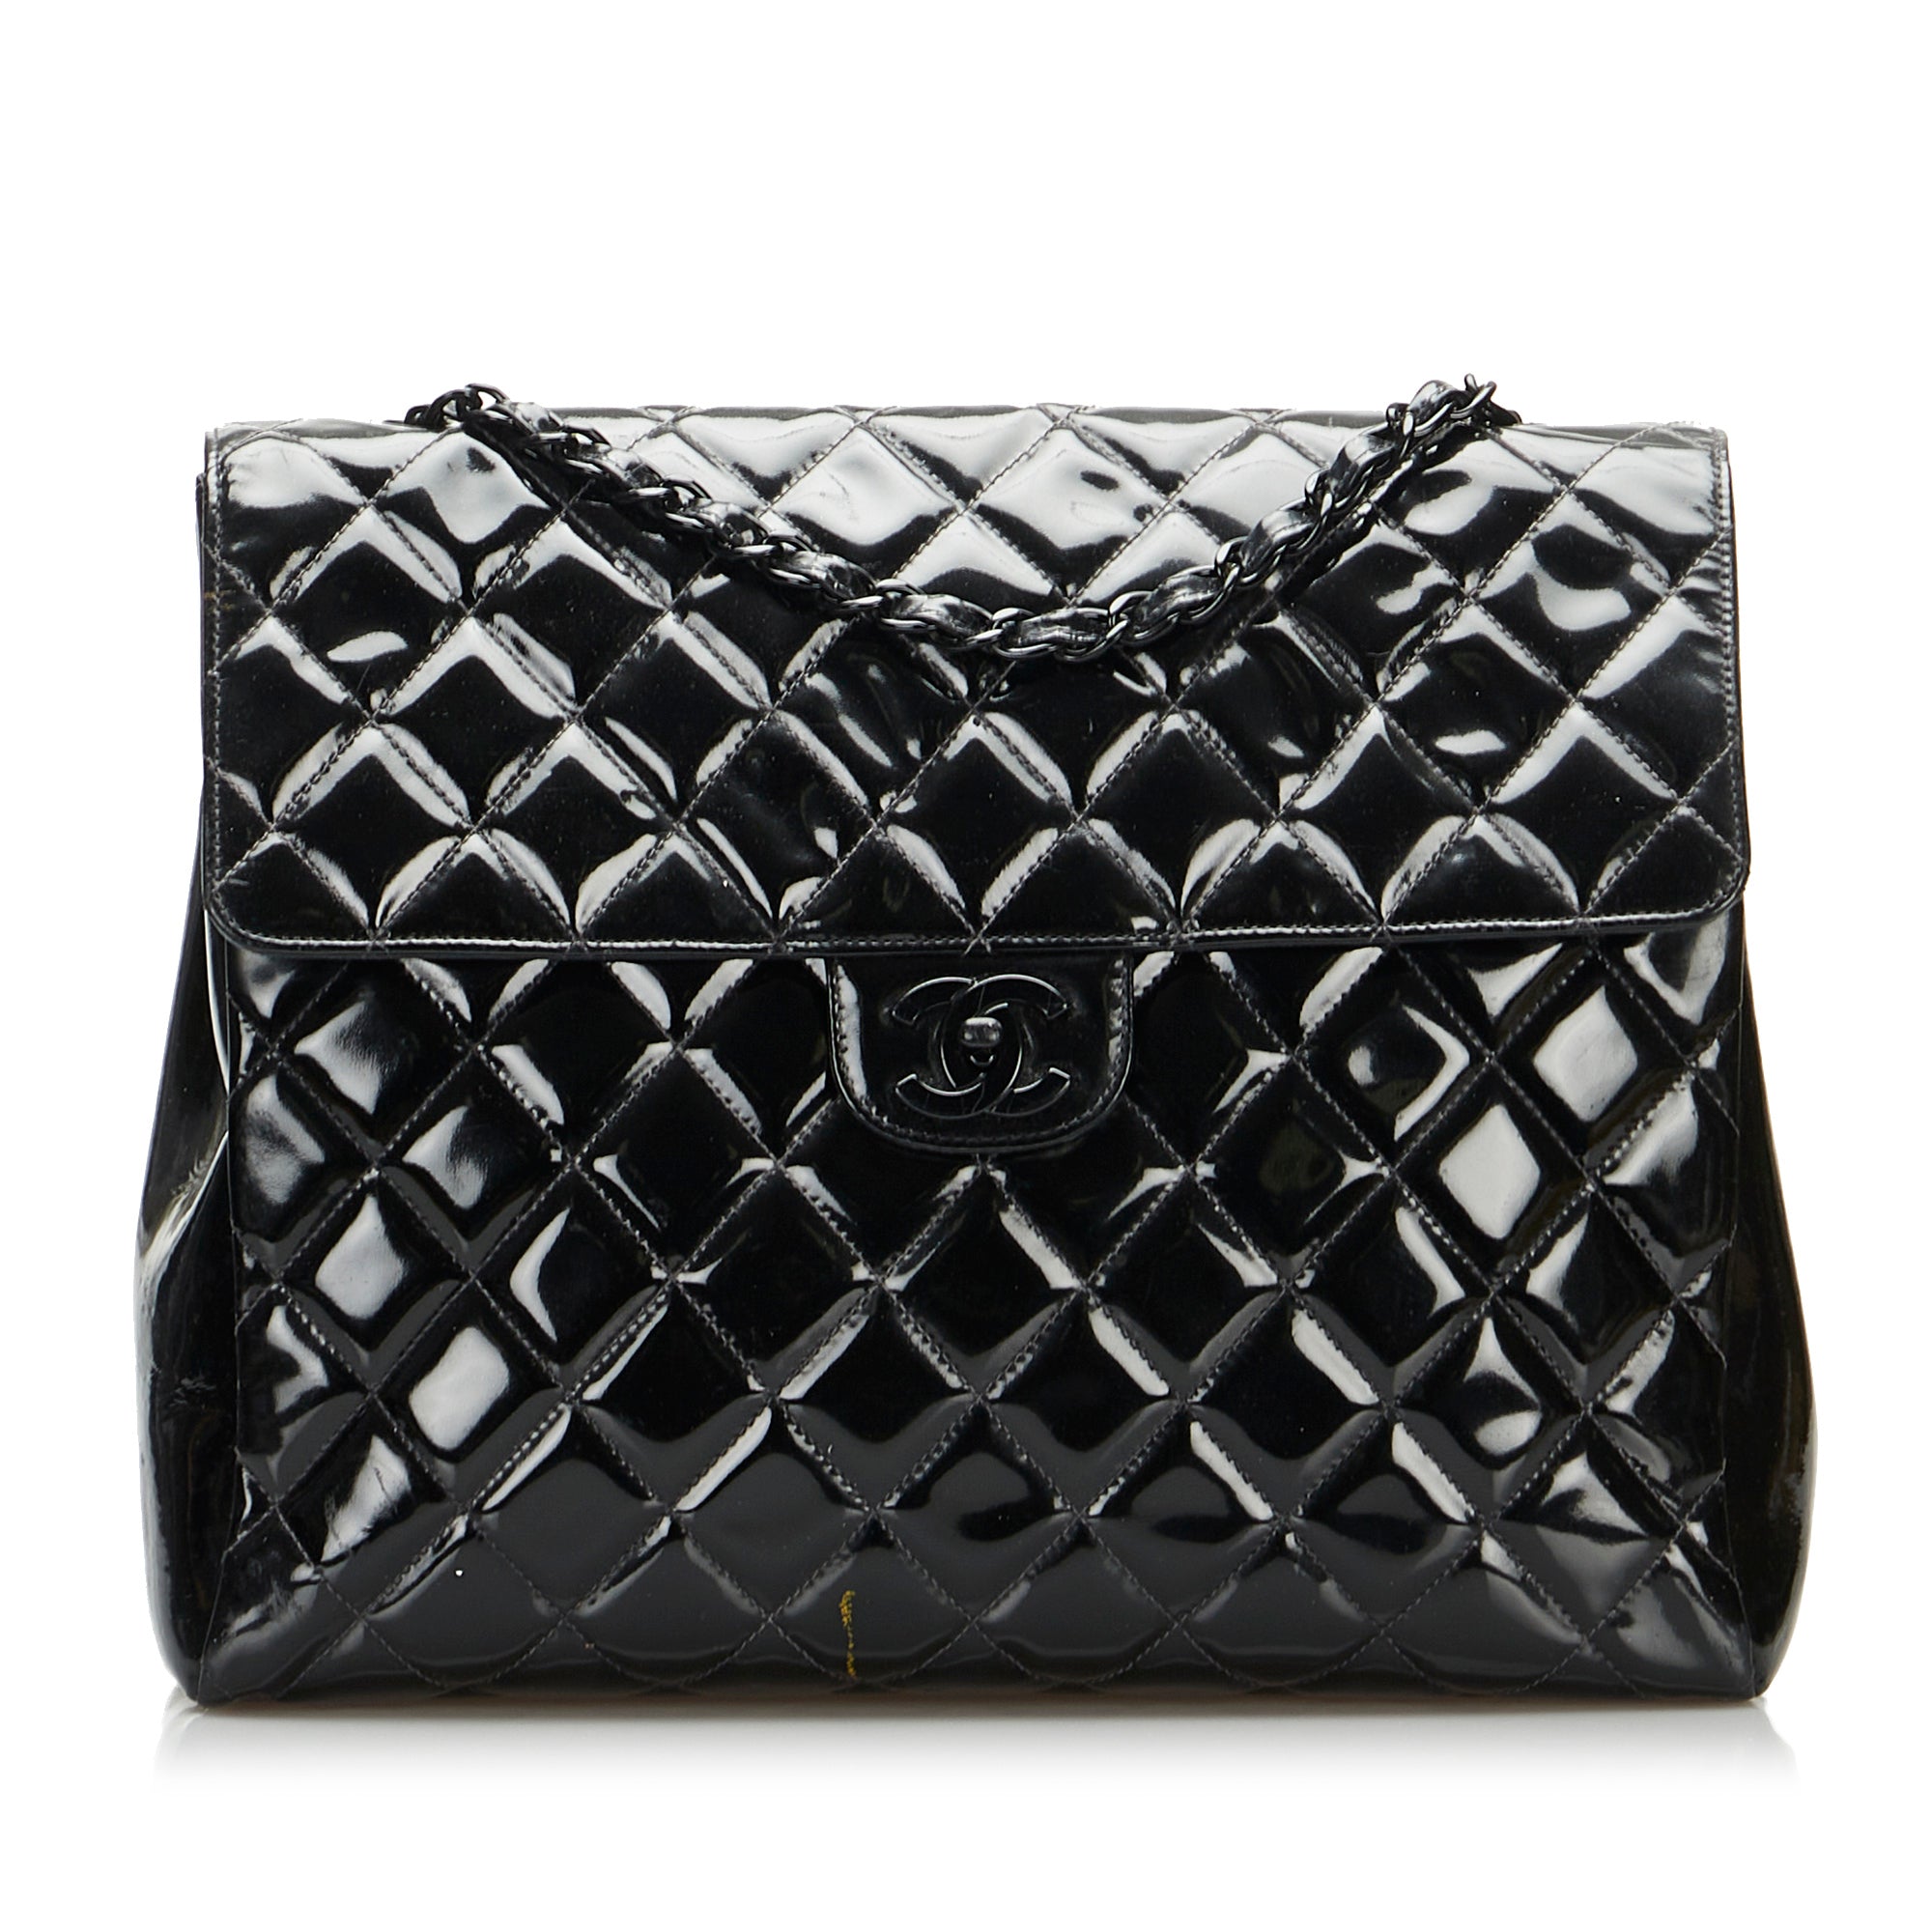 classic black chanel handbag white